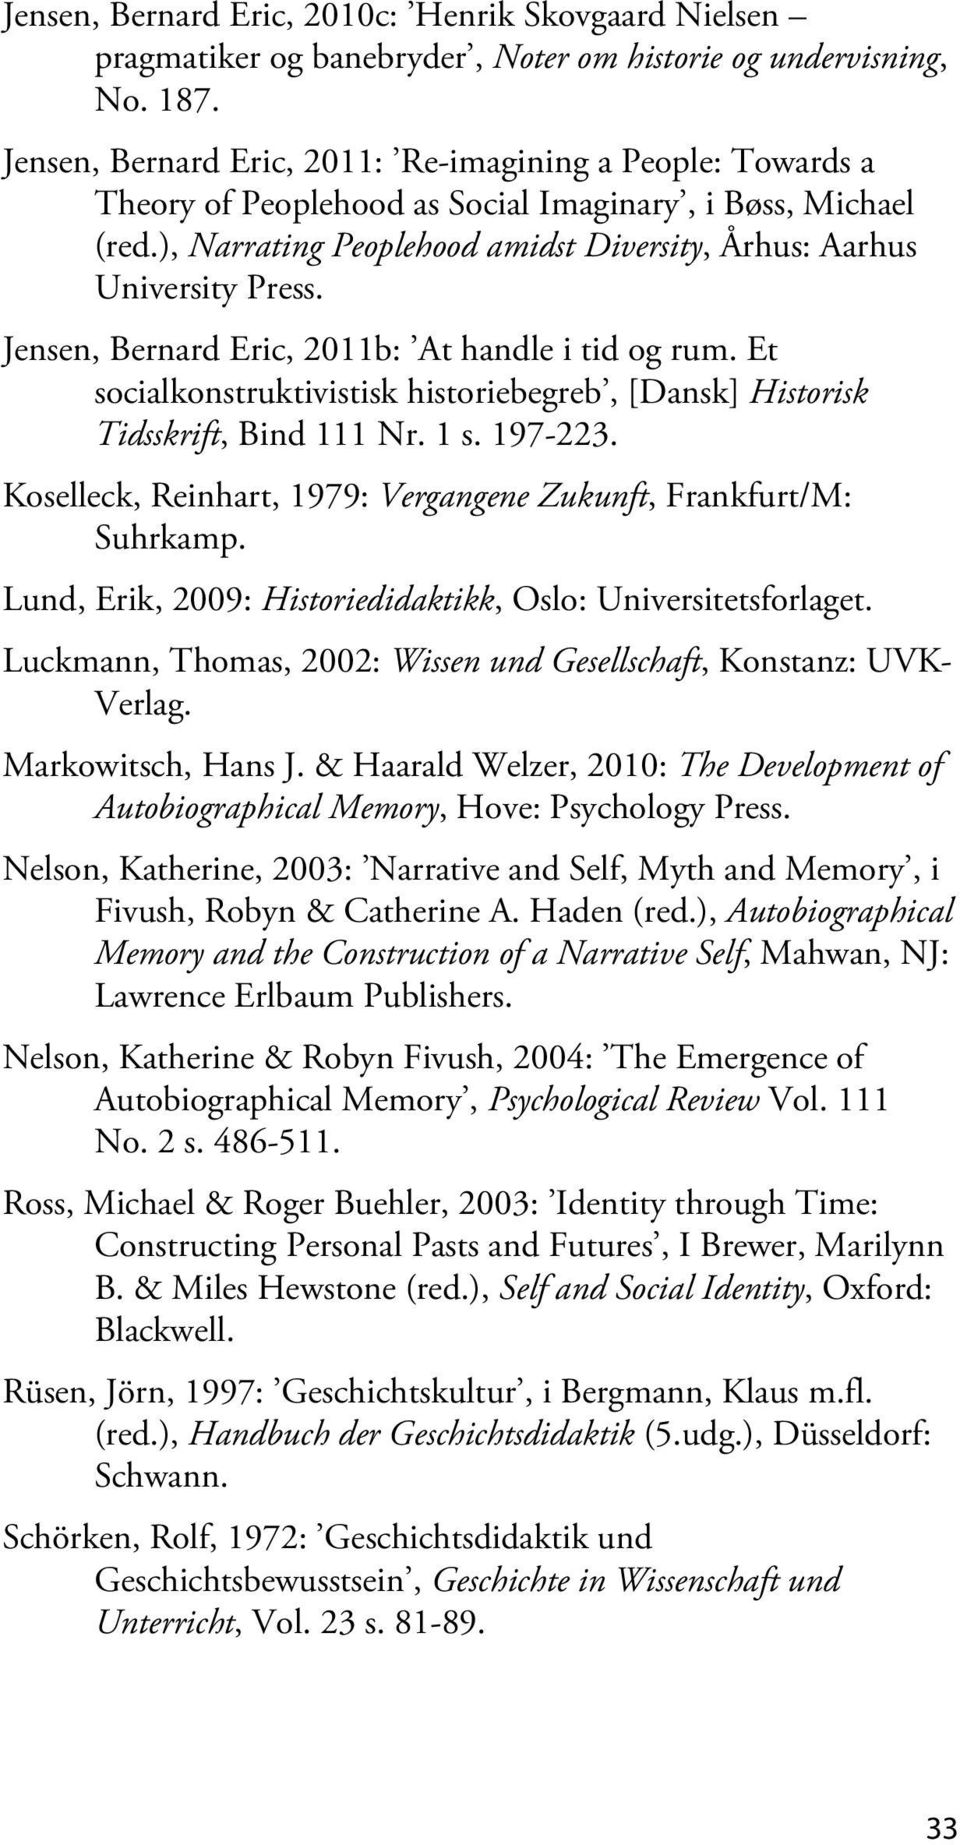 Jensen, Bernard Eric, 2011b: At handle i tid og rum. Et socialkonstruktivistisk historiebegreb, [Dansk] Historisk Tidsskrift, Bind 111 Nr. 1 s. 197-223.